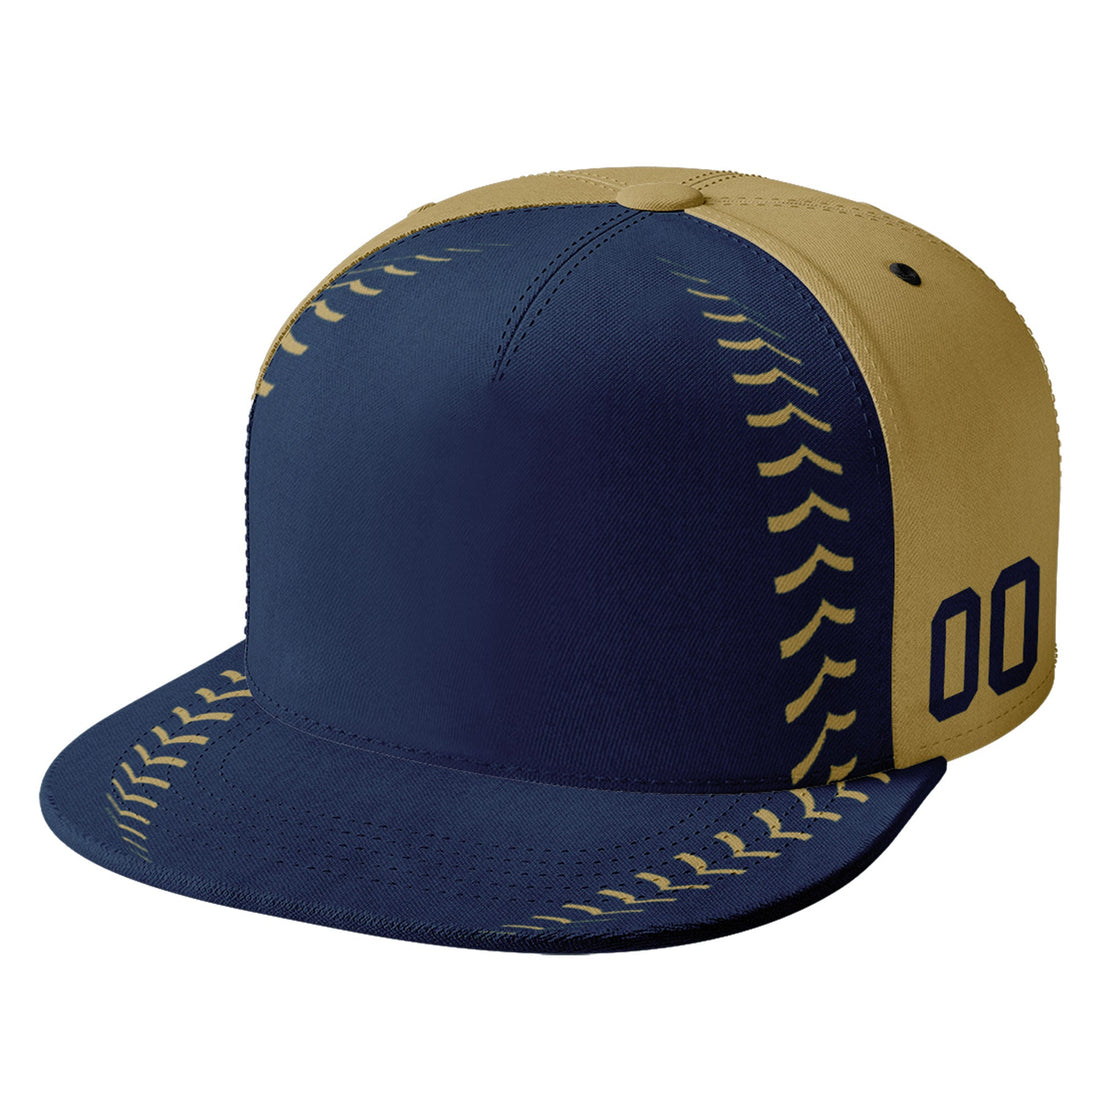 Custom Sport Design Hat Stitched Adjustable Snapback Personalized Baseball Cap PR067B-bd0b00d9-af